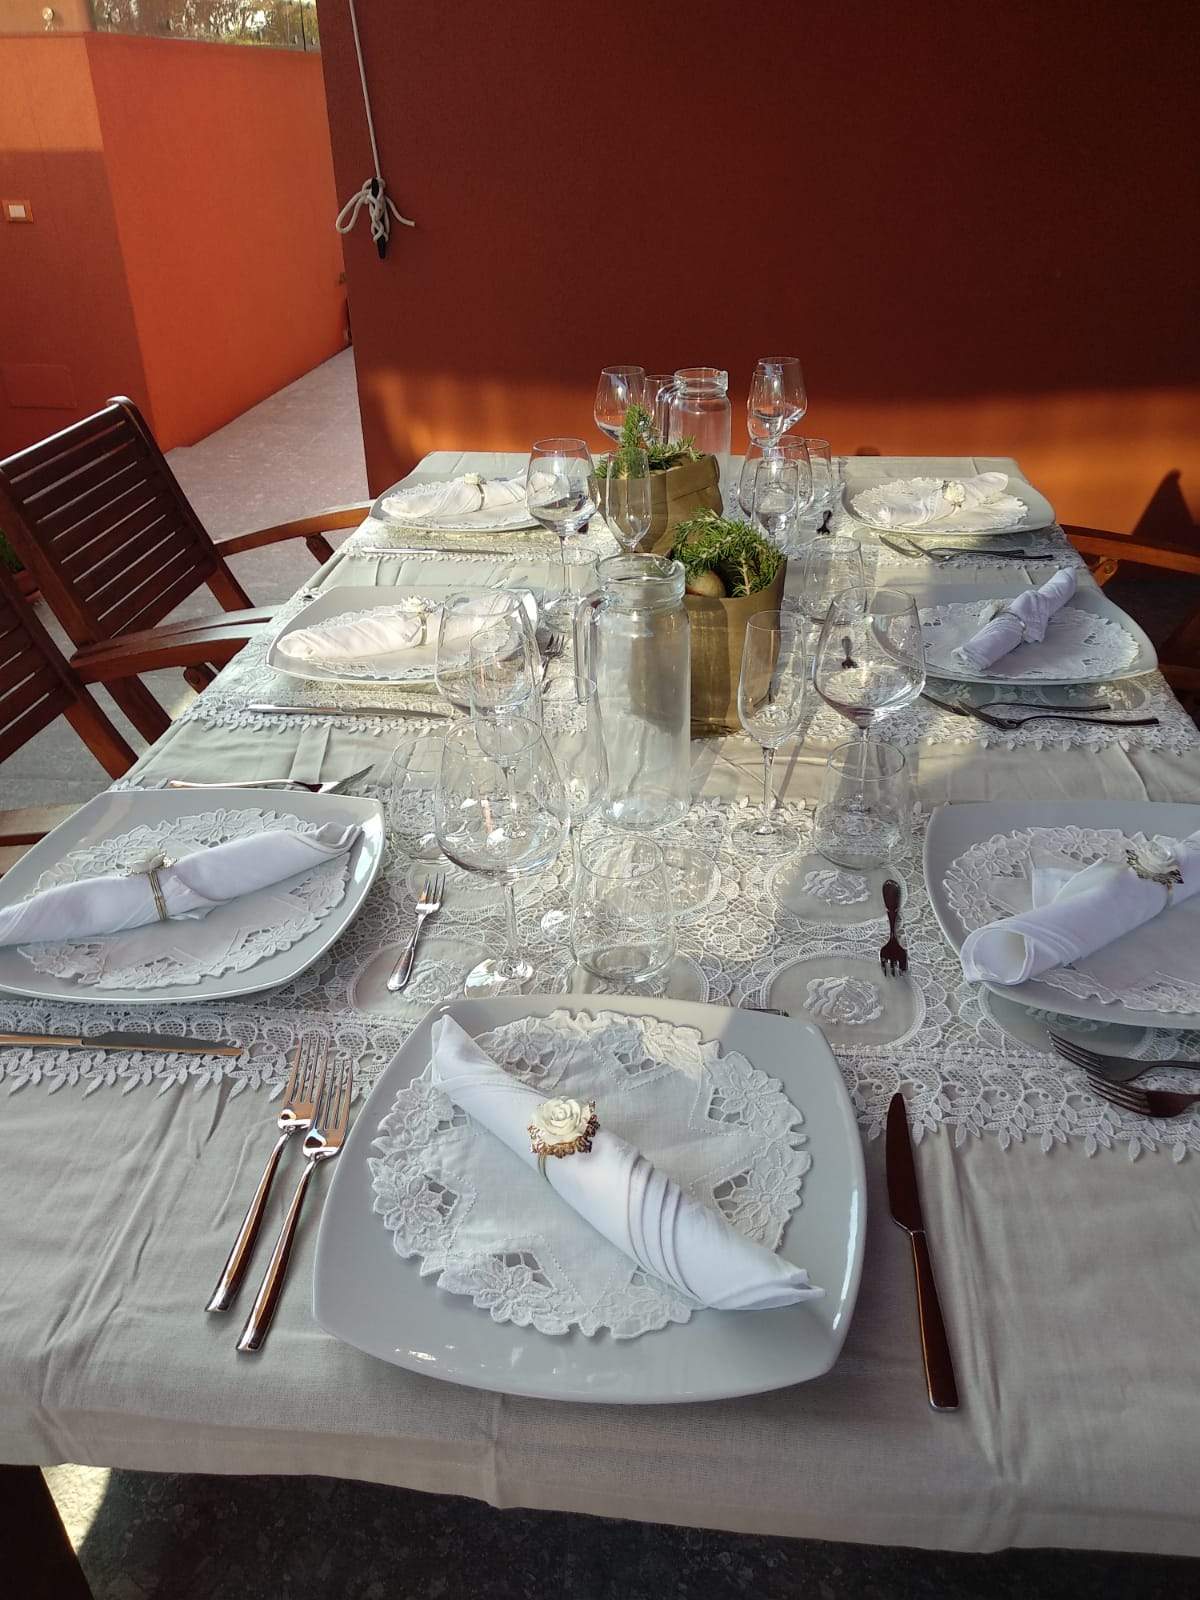 Esperienza è possibile organizzare un'esperienza per imparare a cucinare piatti tipici siciliani